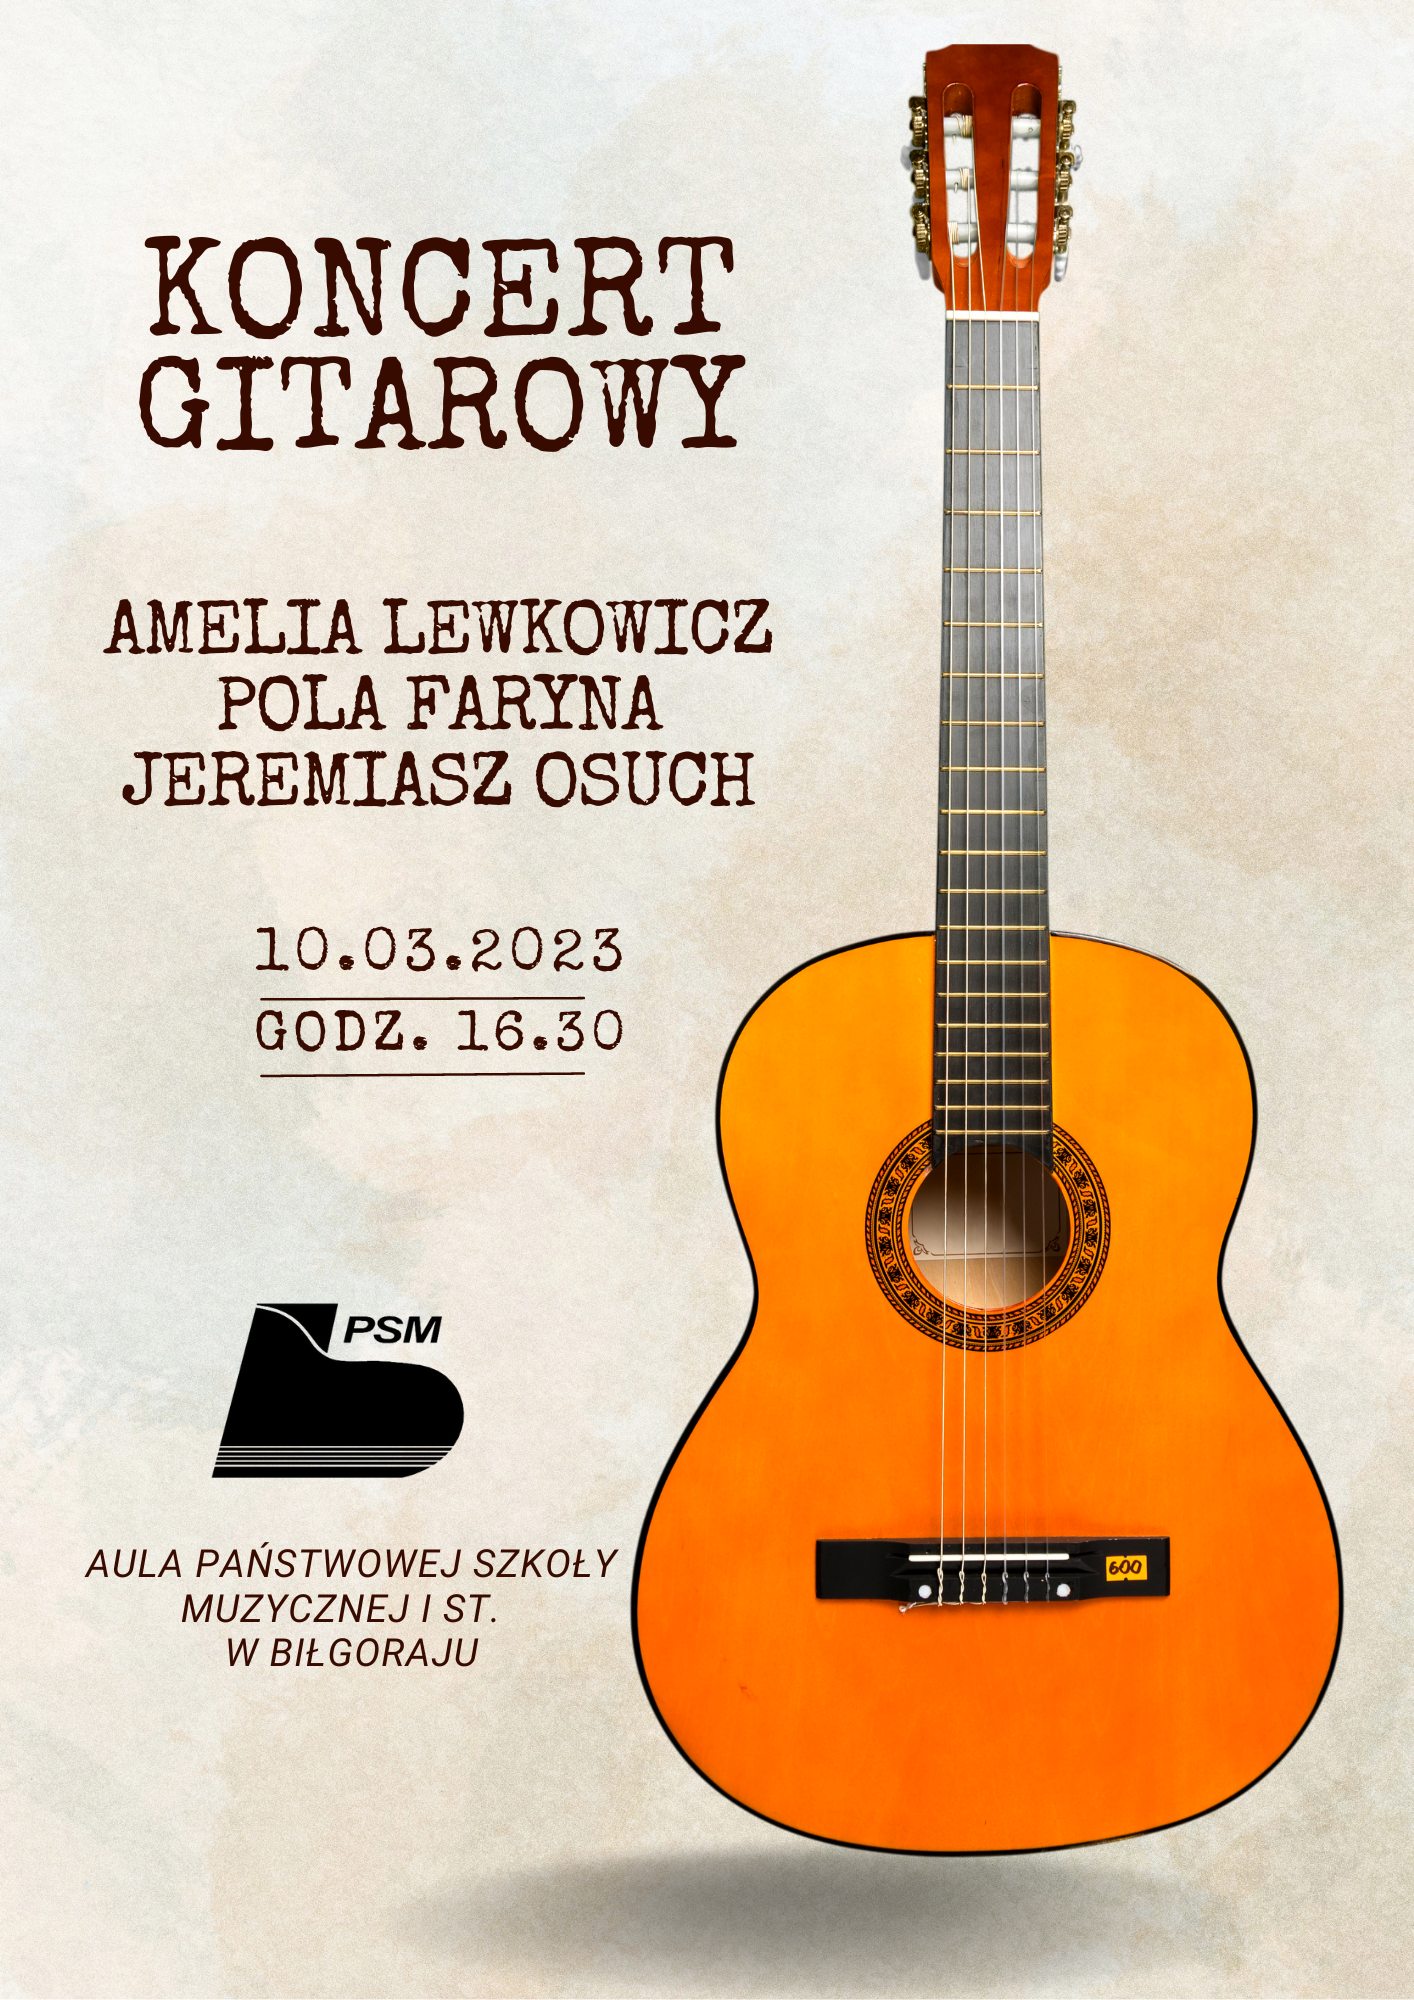 Koncert gitarowy, który odbędzie się 10 marca 2023 r. w Auli PSM I st. w Biłgoraju. Centralnie widoczna gitara.